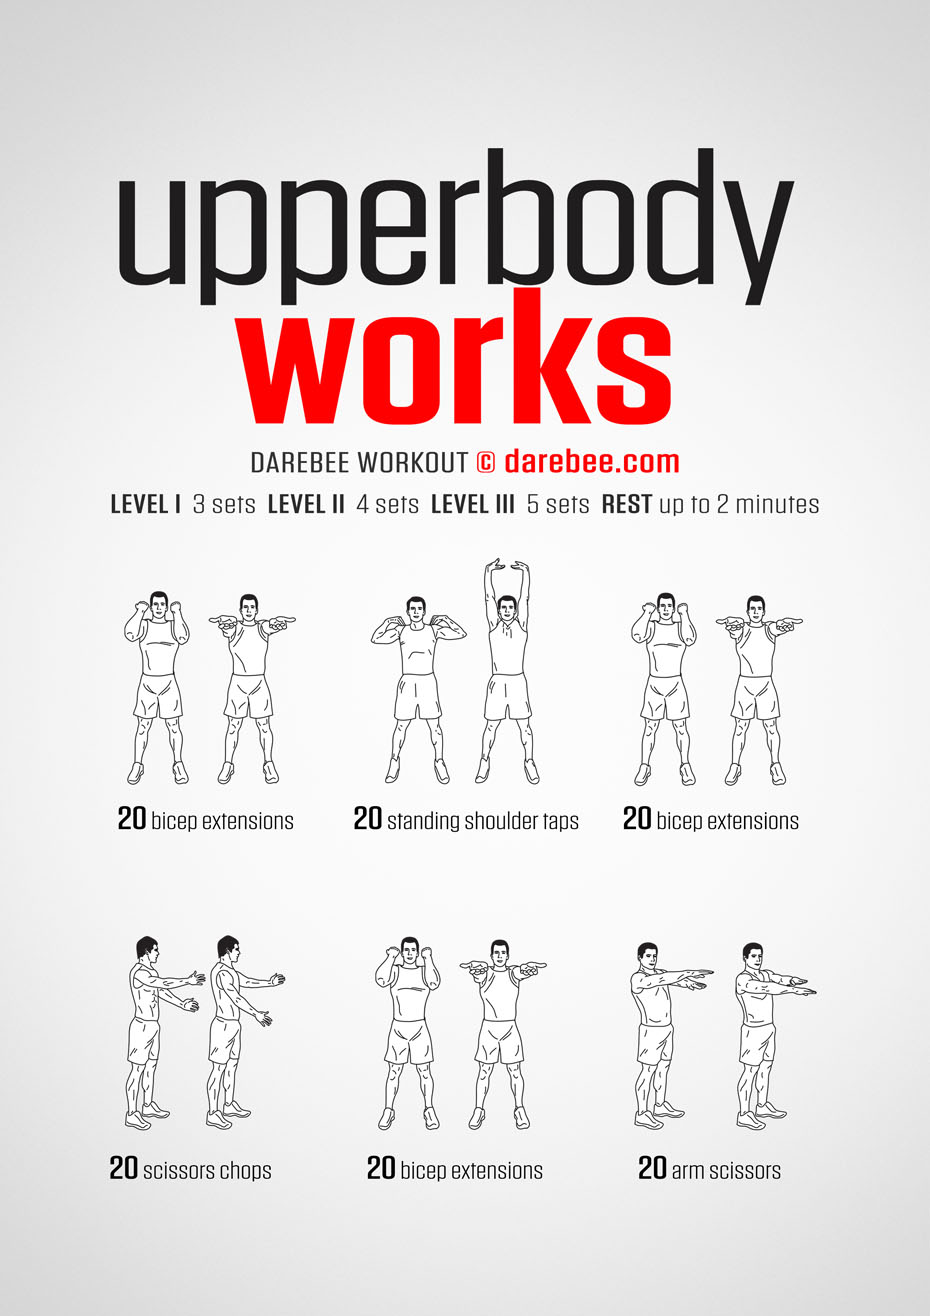 Upper body workout by Darebee